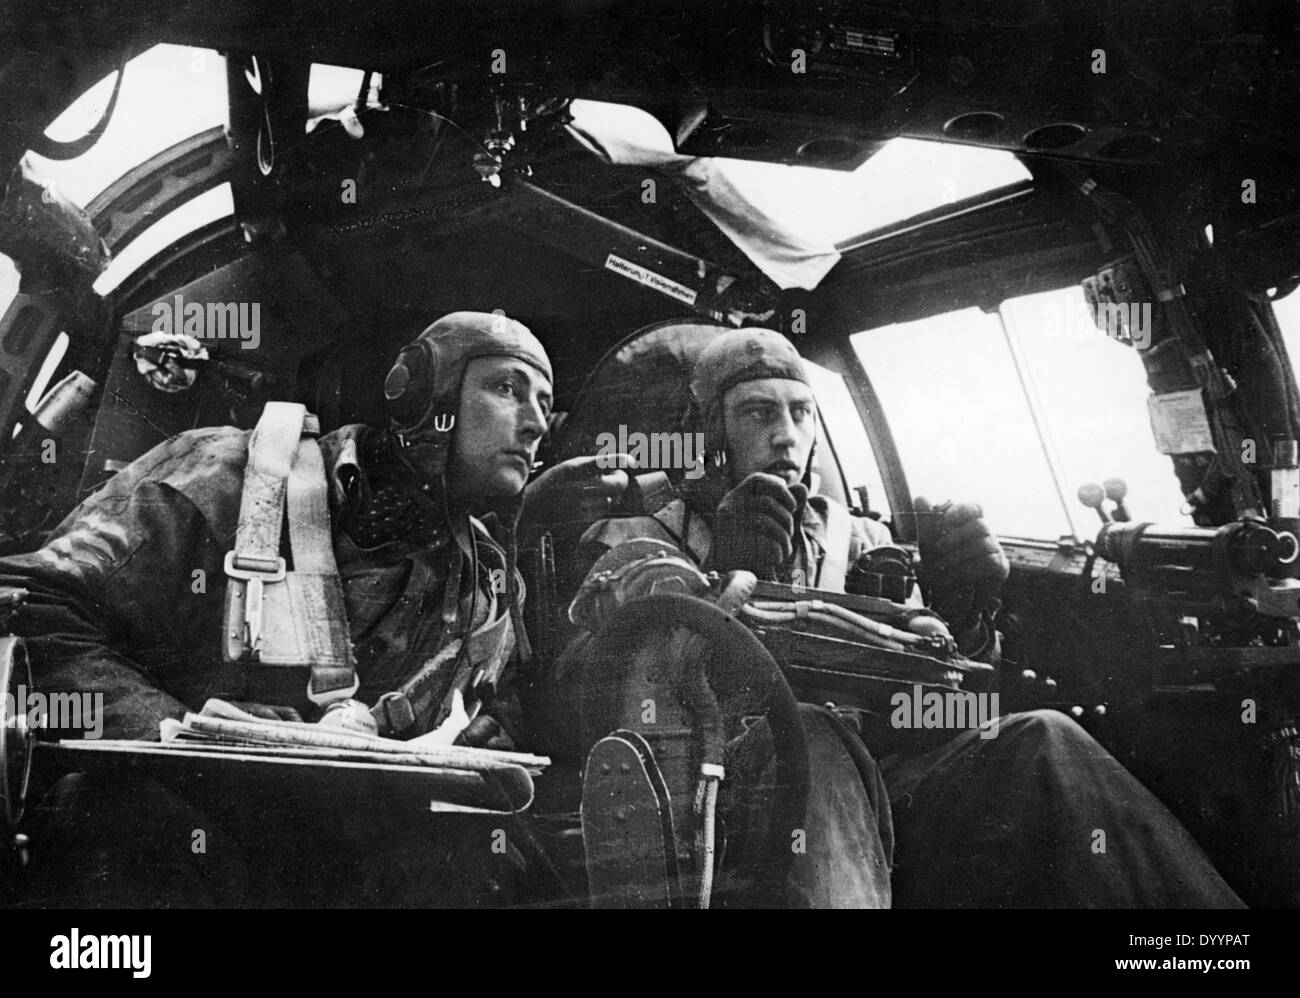 German bomber crew, 1941-1945 Stock Photo